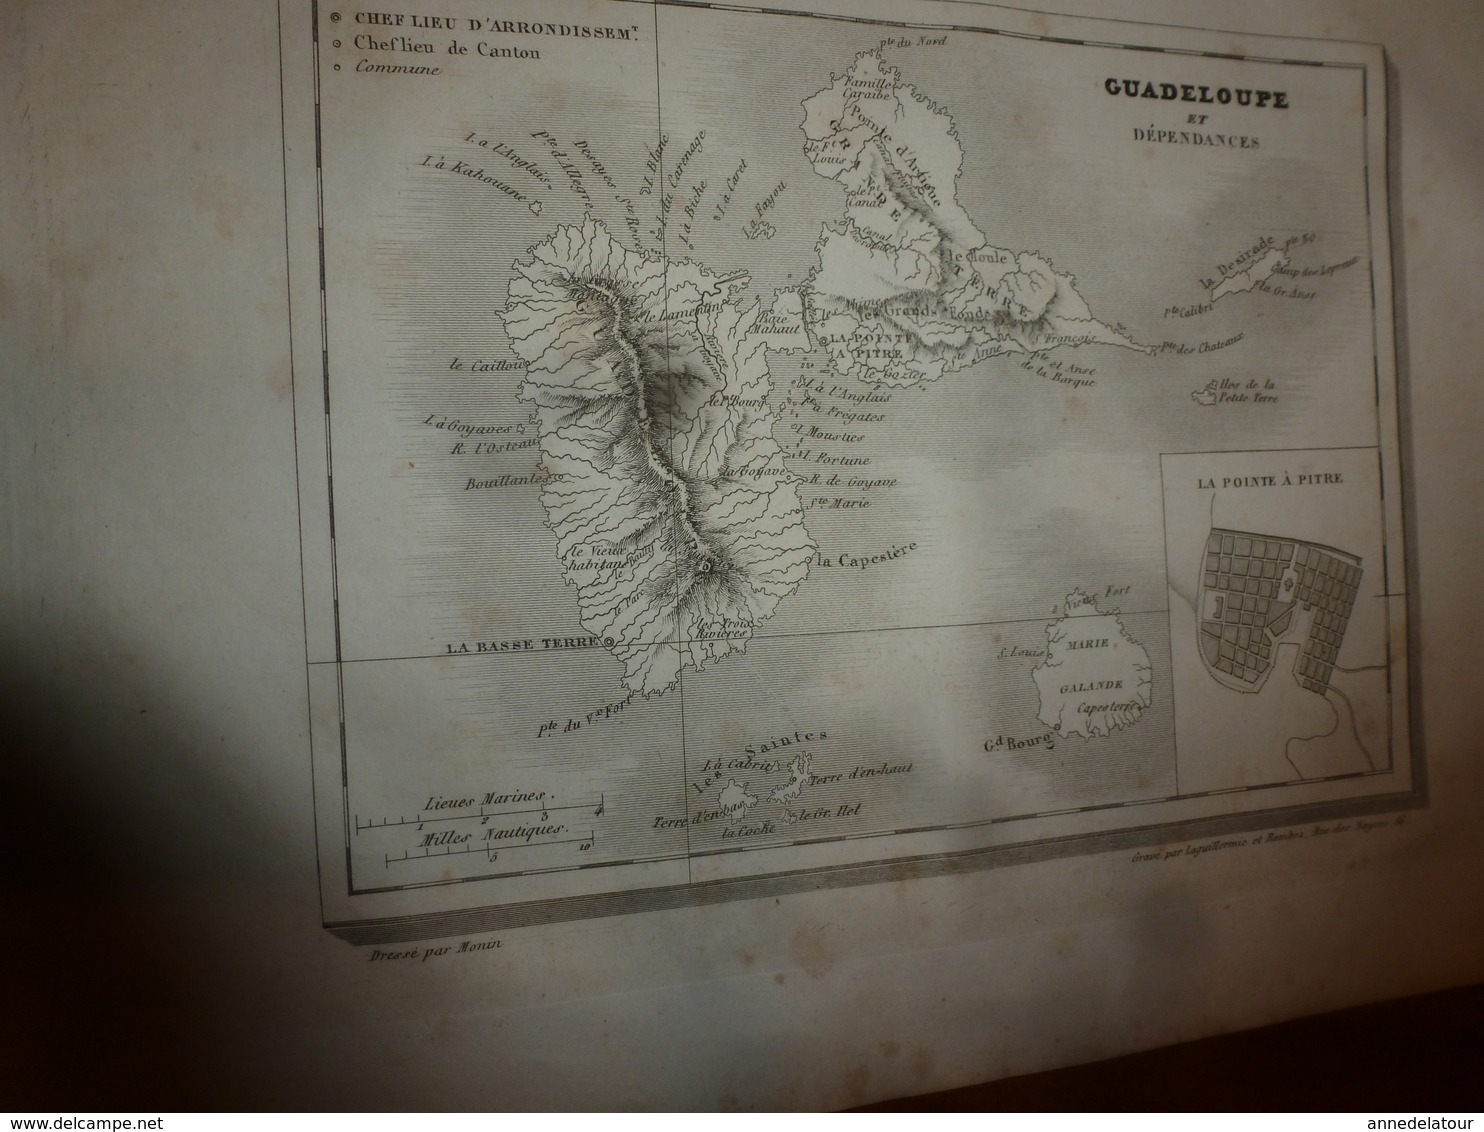 1935 FRANCE PITTORESQUE (Guadeloupe ; Guyane française) -Antiquité-Villes-Habitations-Travaux-Indiens-Gravures-etc